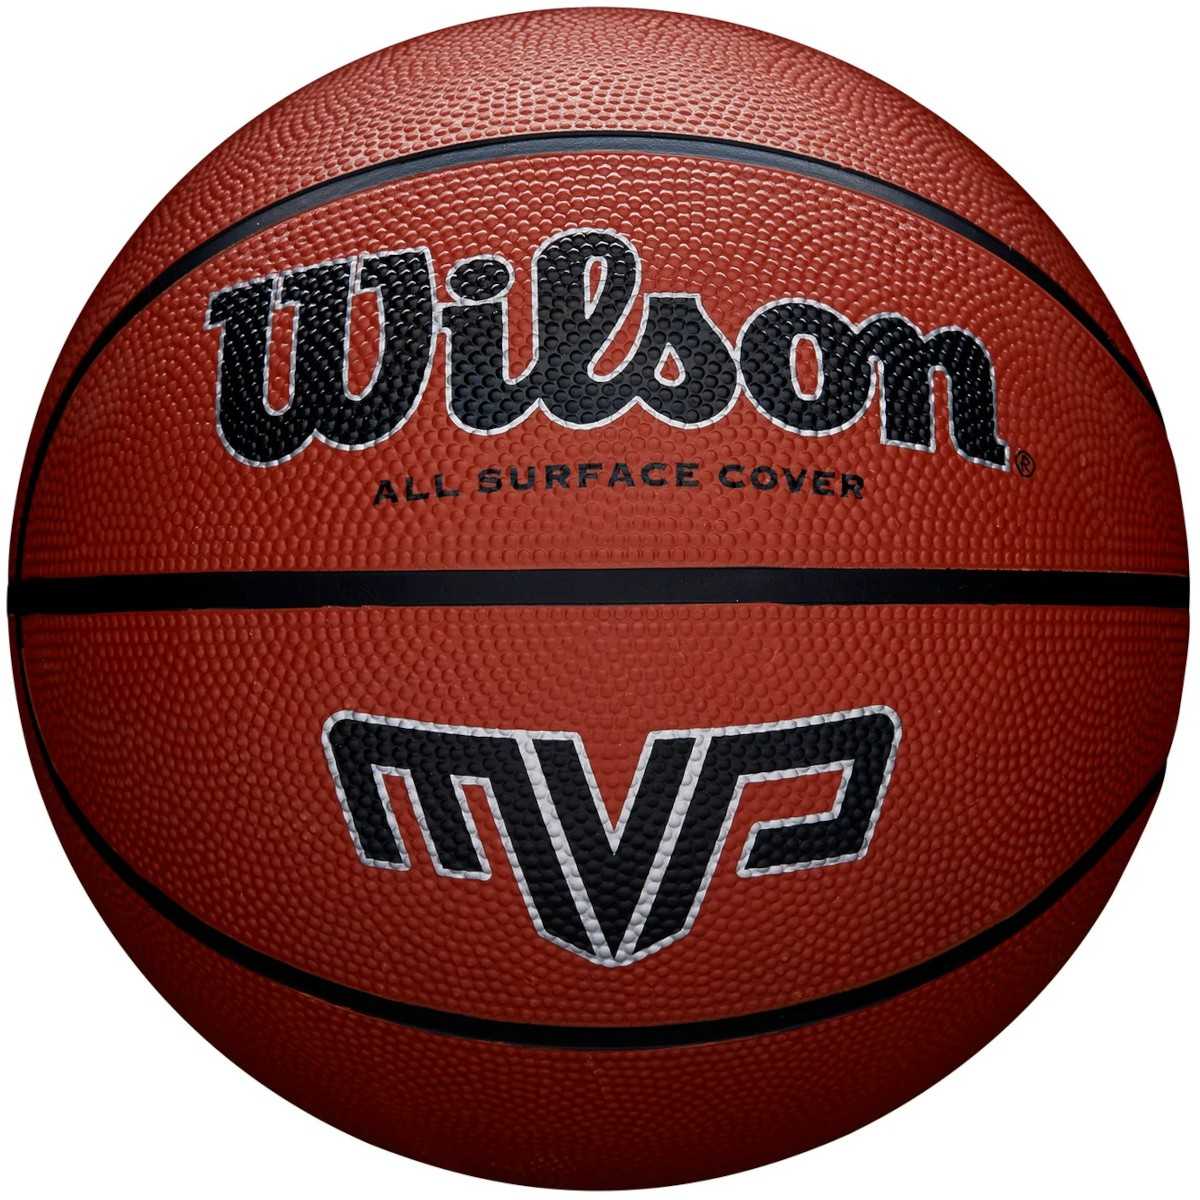 Krepšinio kamuolys Wilson MVP, 5